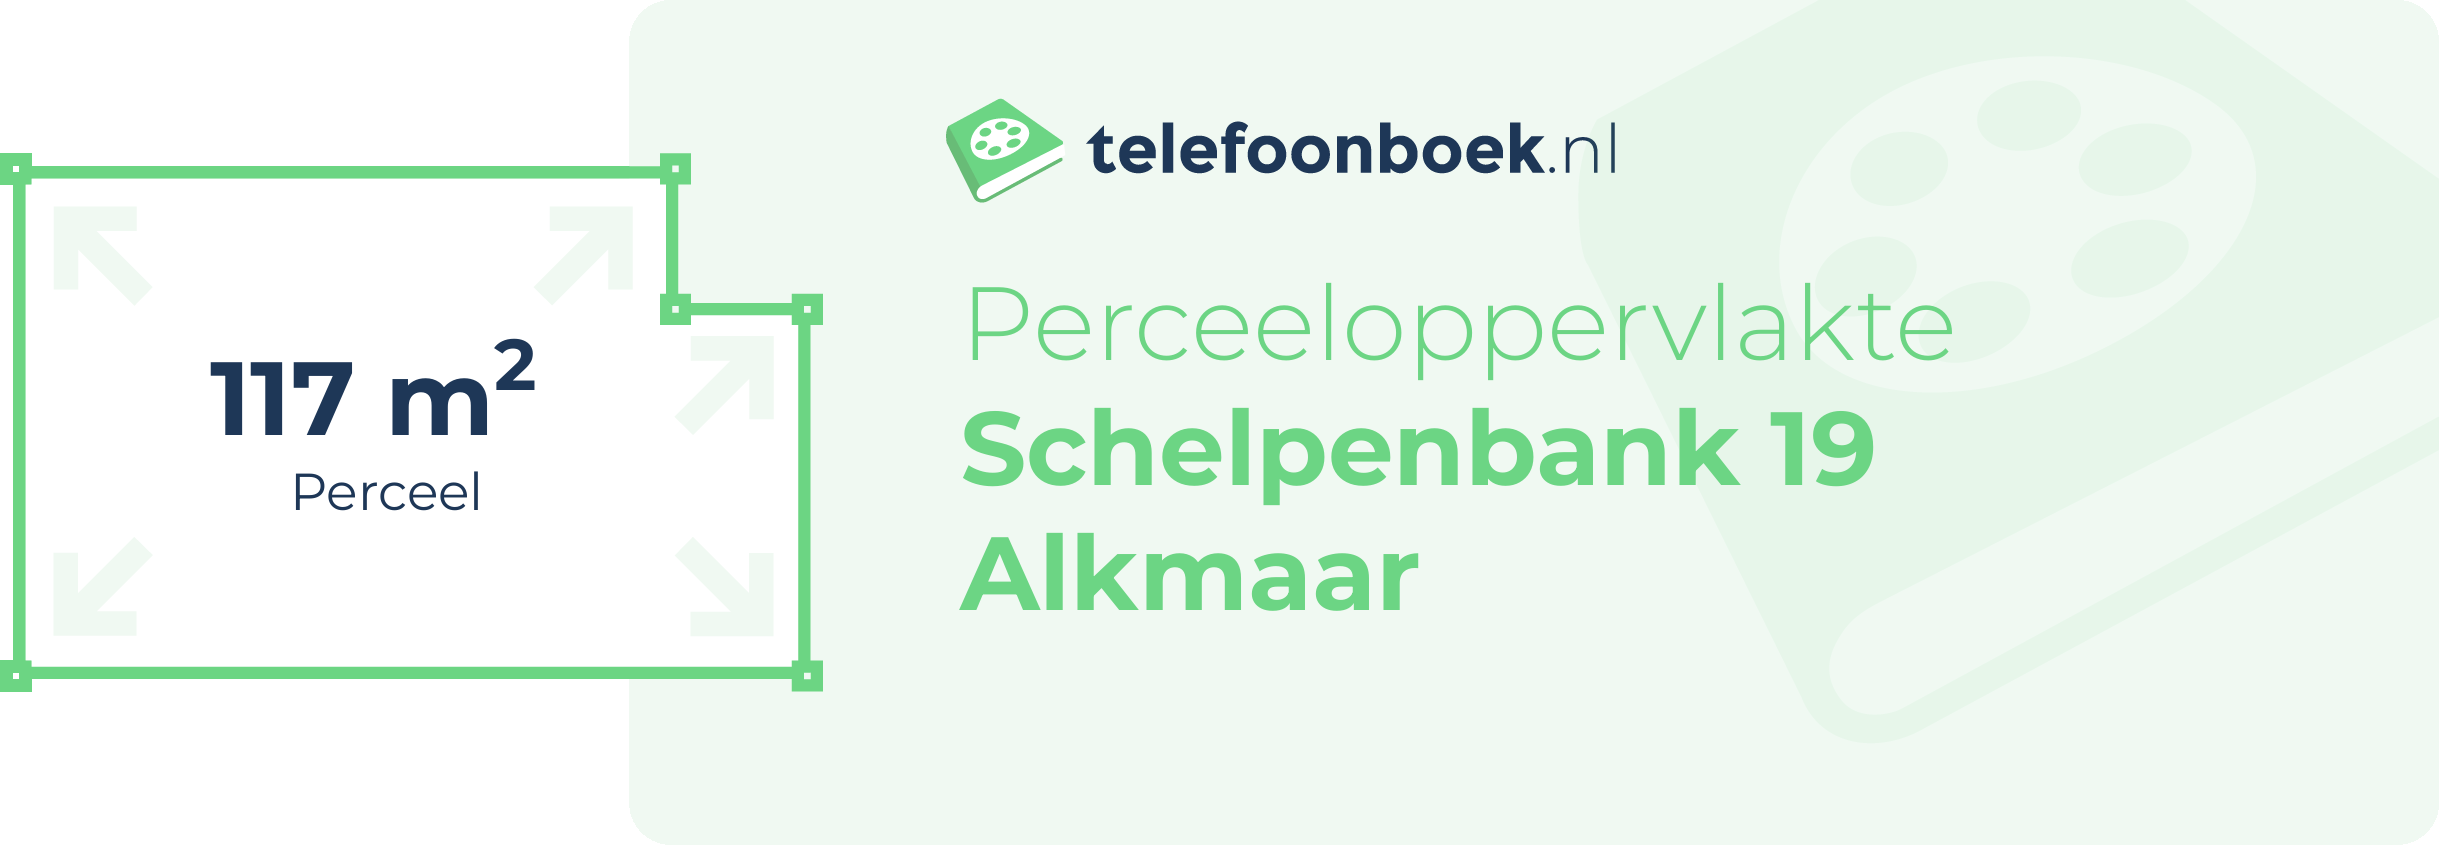 Perceeloppervlakte Schelpenbank 19 Alkmaar